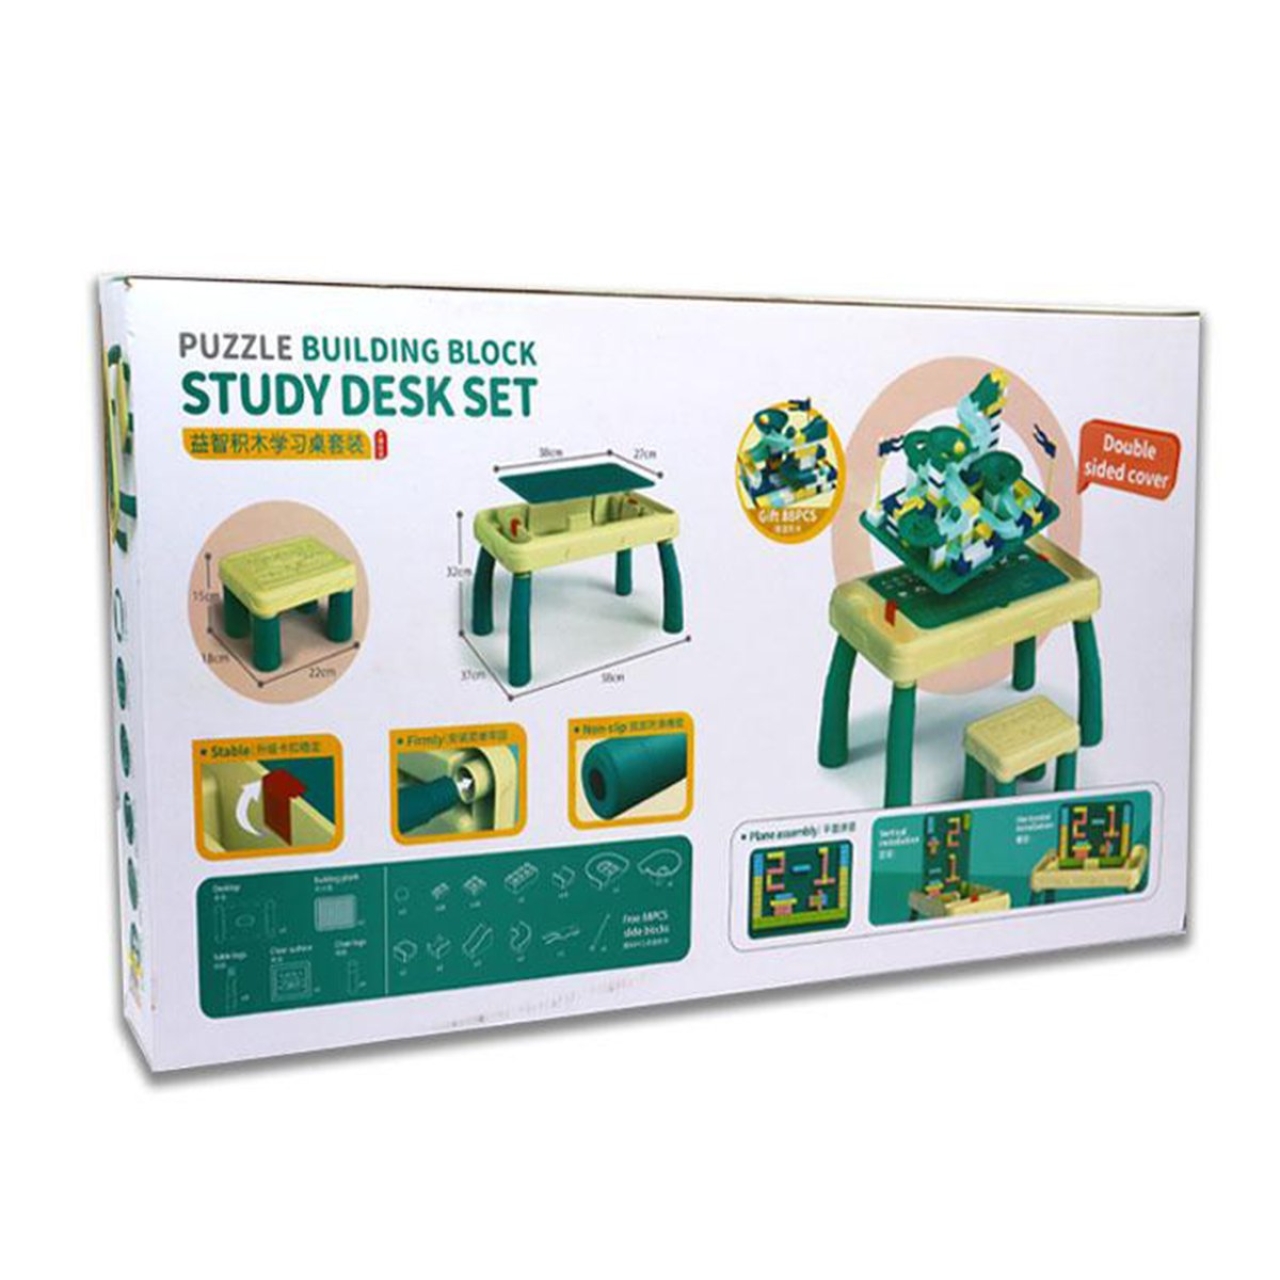 ساختنی مدل Study desk set